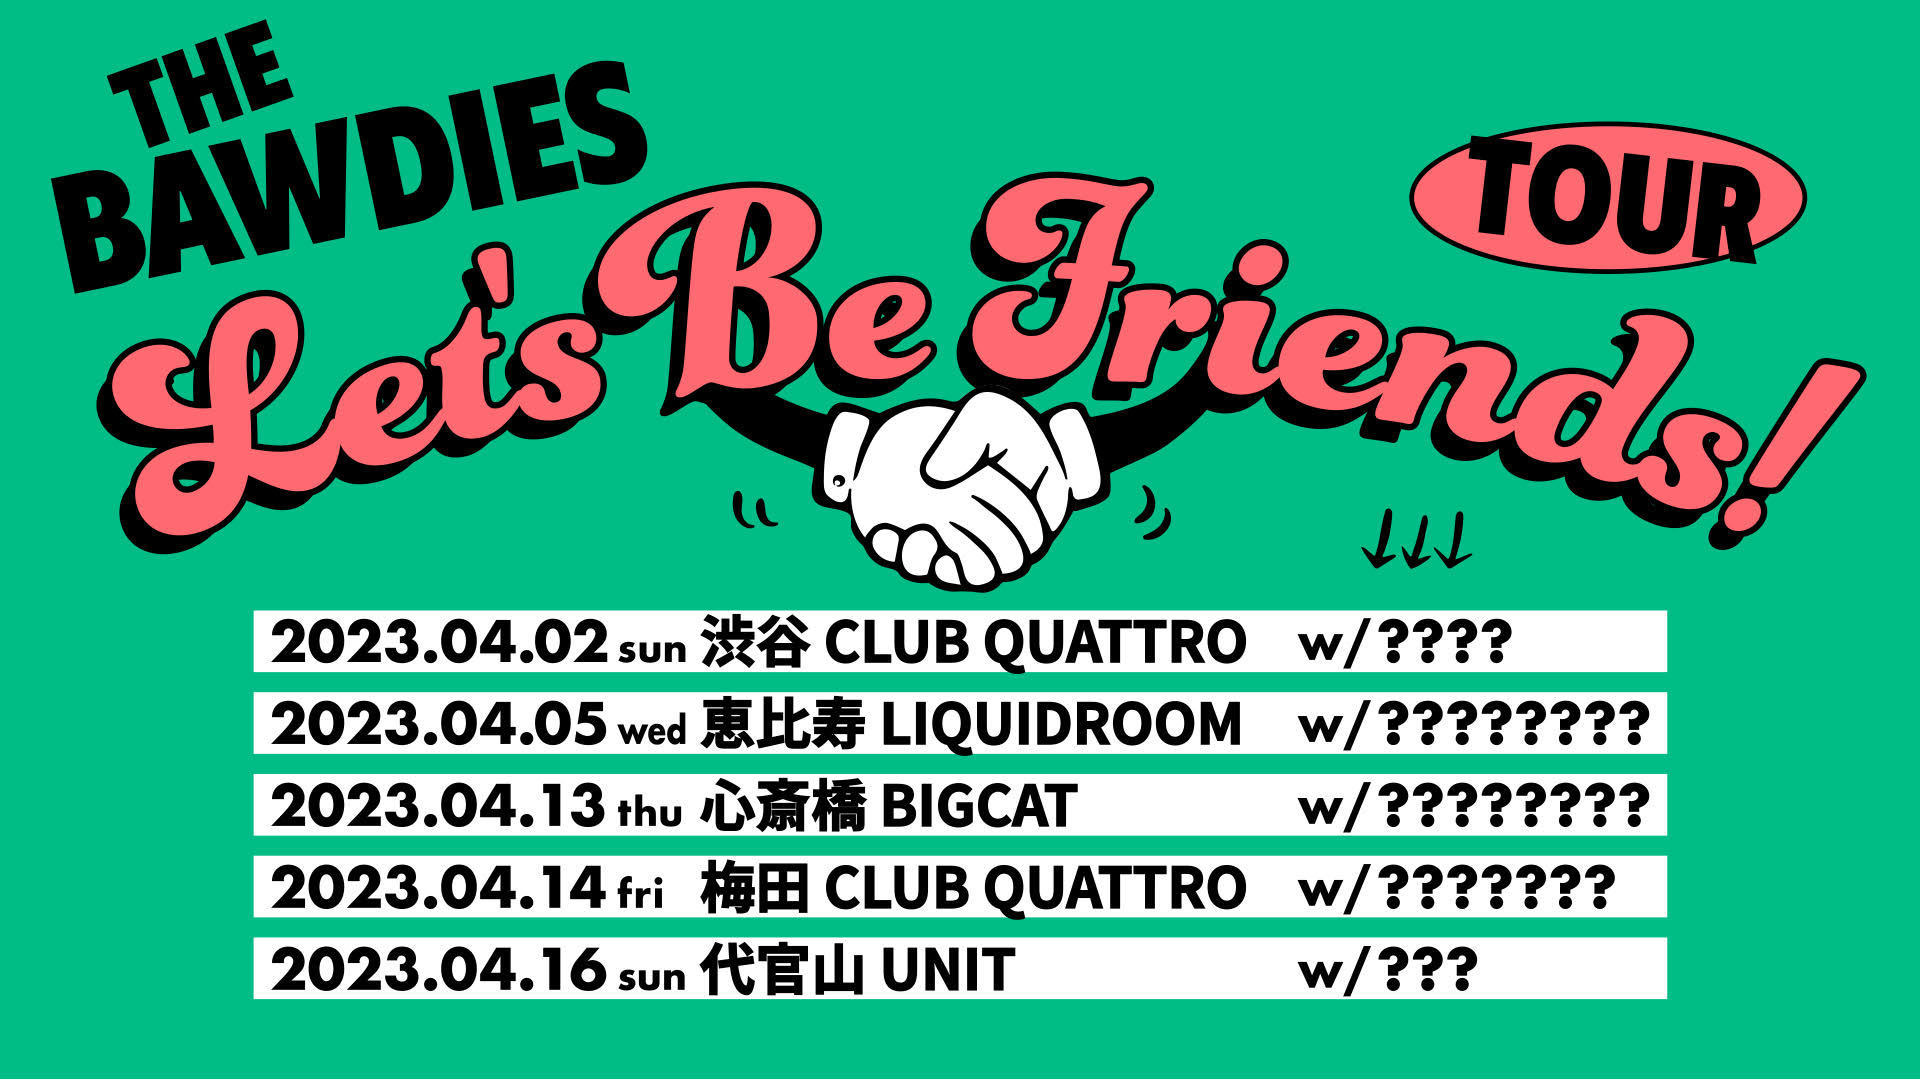 LET'S BE FRIENDS! TOUR